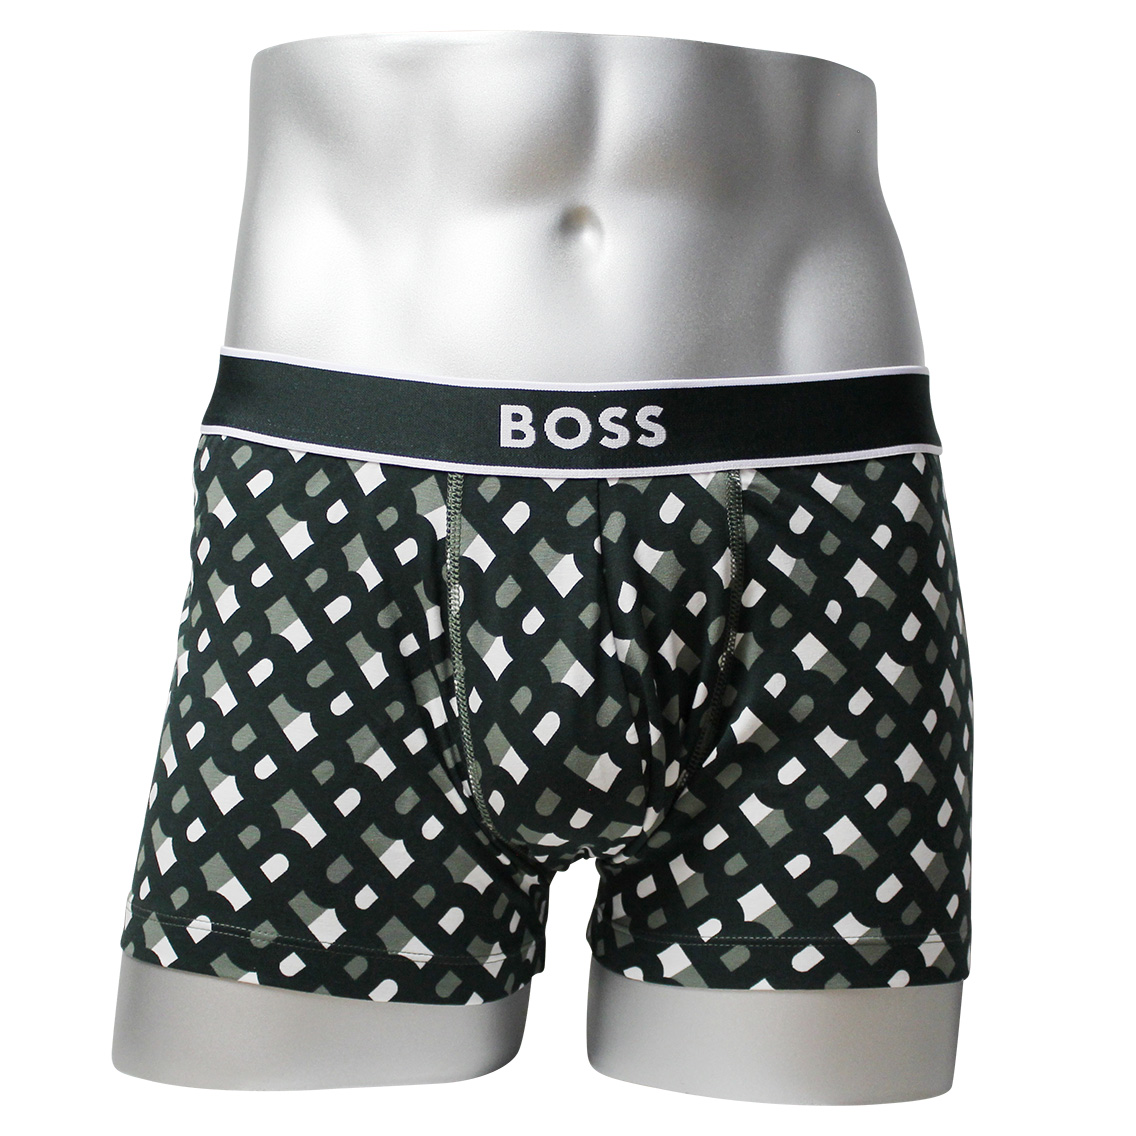 [50489443-344] HUGO BOSS ヒューゴボス ボクサーパンツ メンズ アンダーウェア インナー 男性 下着 ブランド おすすめ 人気 プレゼント